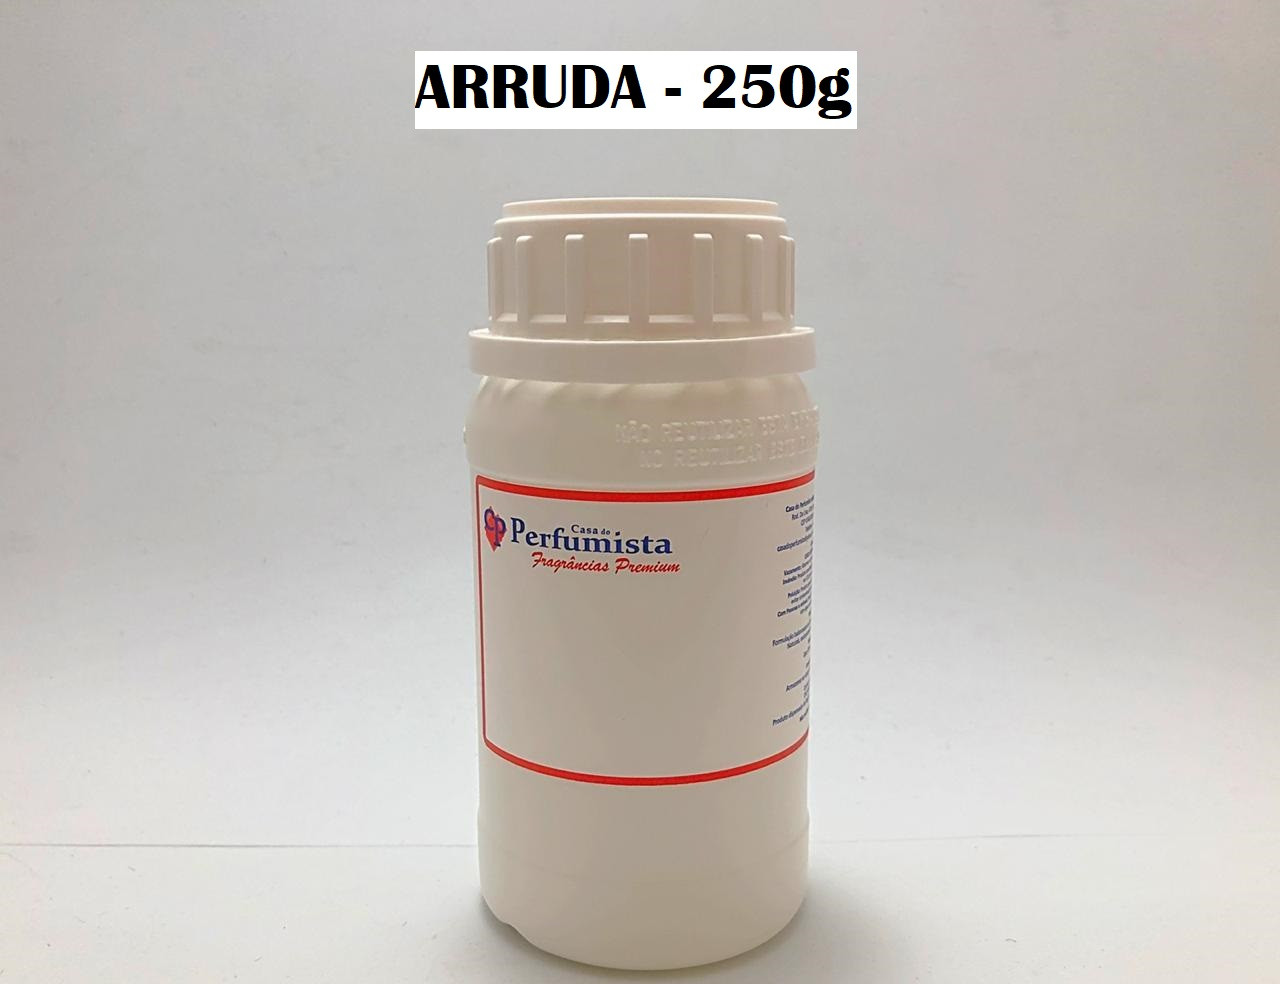 ARRUDA - 250g